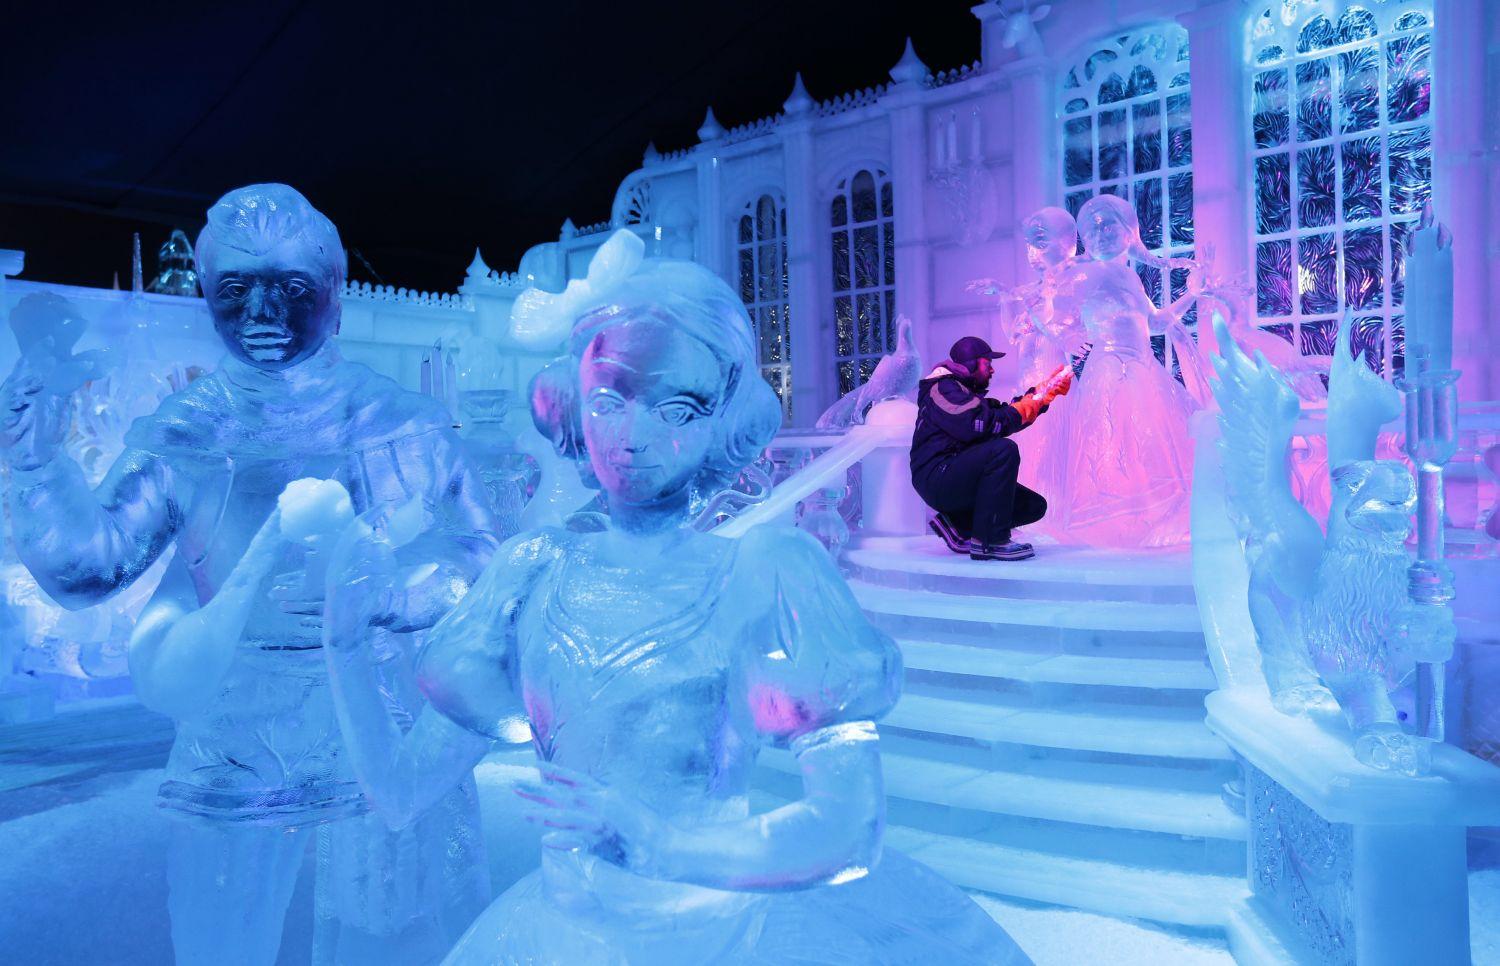 A Jégvarázs szereplői a tavaly novemberi bruges-i hó- és jégszobrász fesztiválon